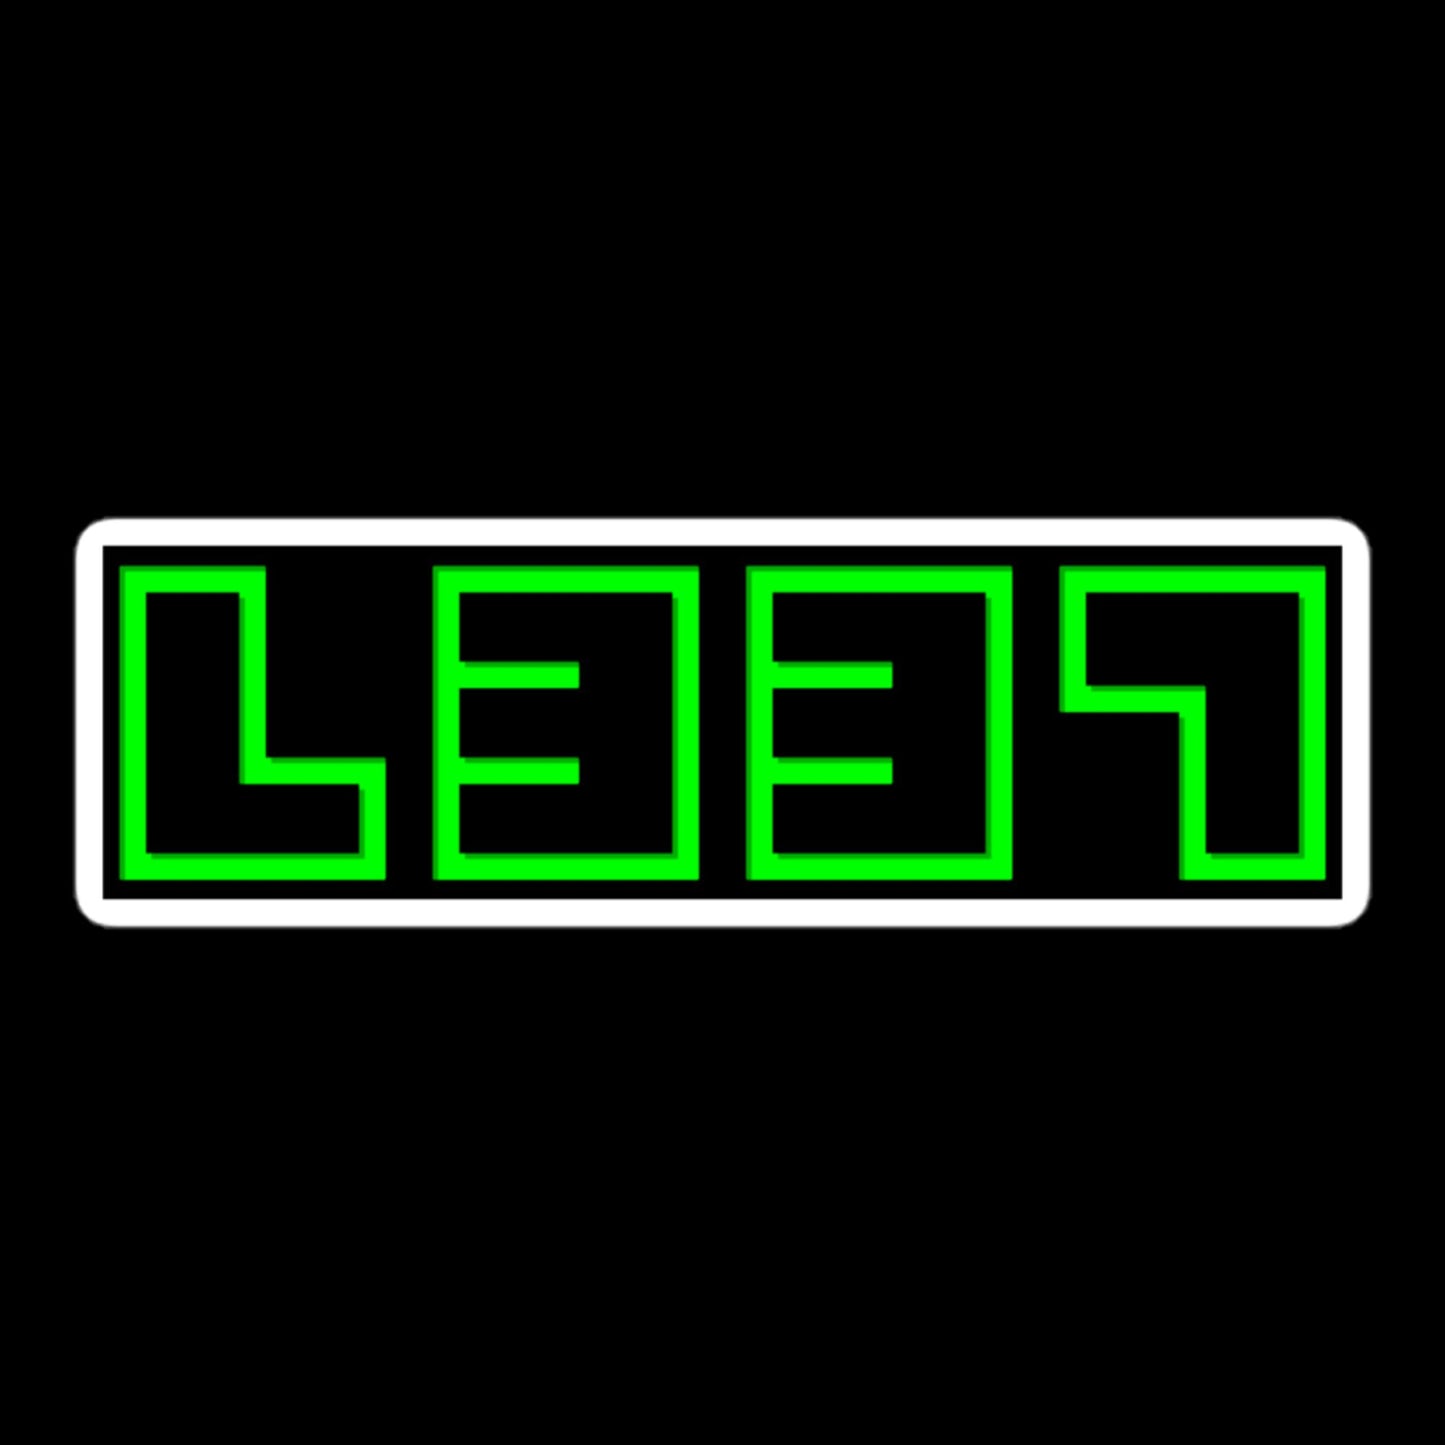 LEET 1337 In Neon Green Stickers